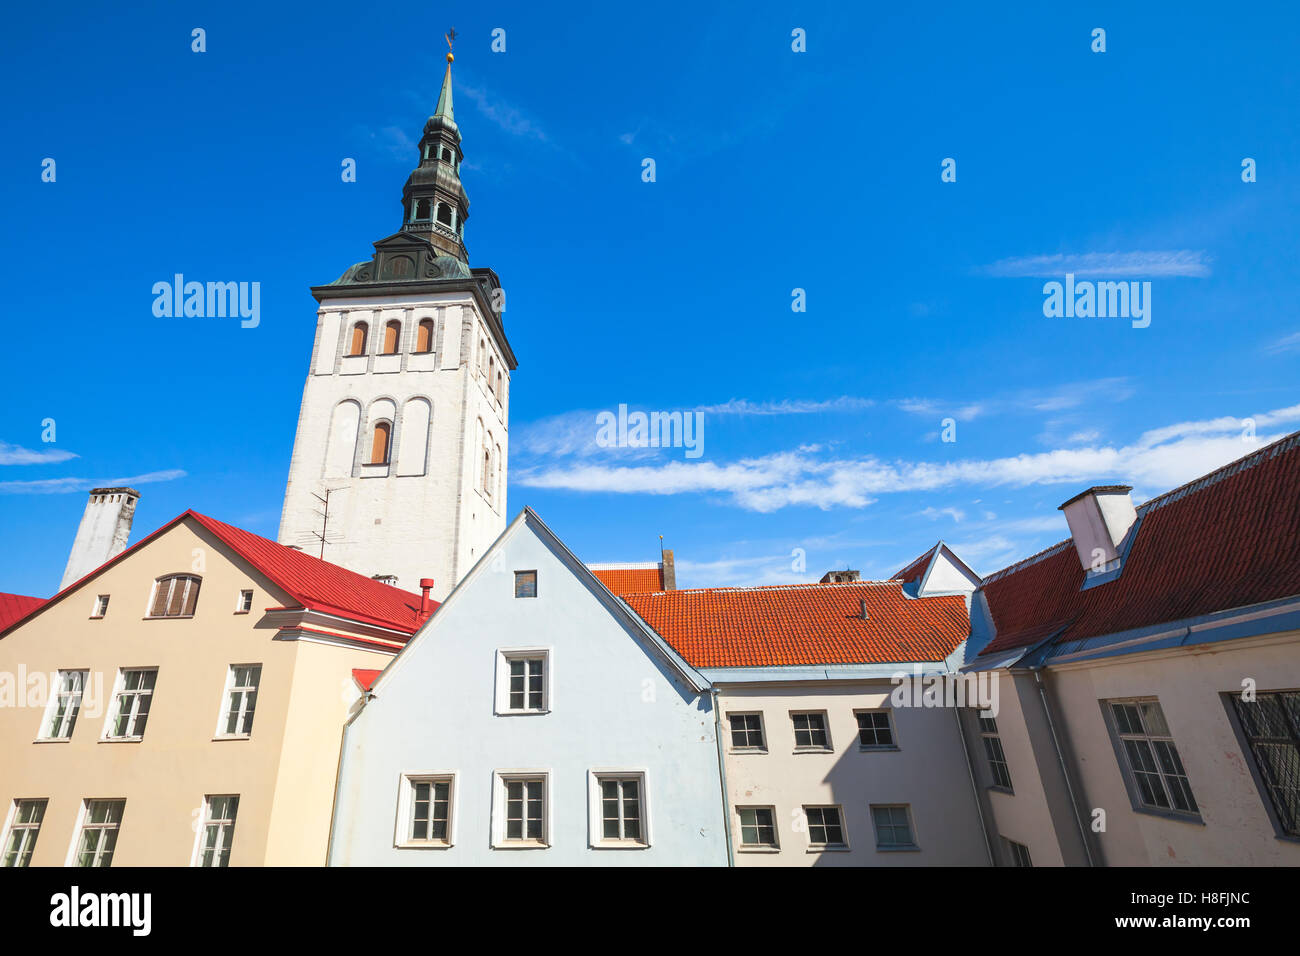 Altstadt von Tallinn, Estland. Skyline mit bunten Häusern und St. Nicholas Church, Niguliste Museum Stockfoto